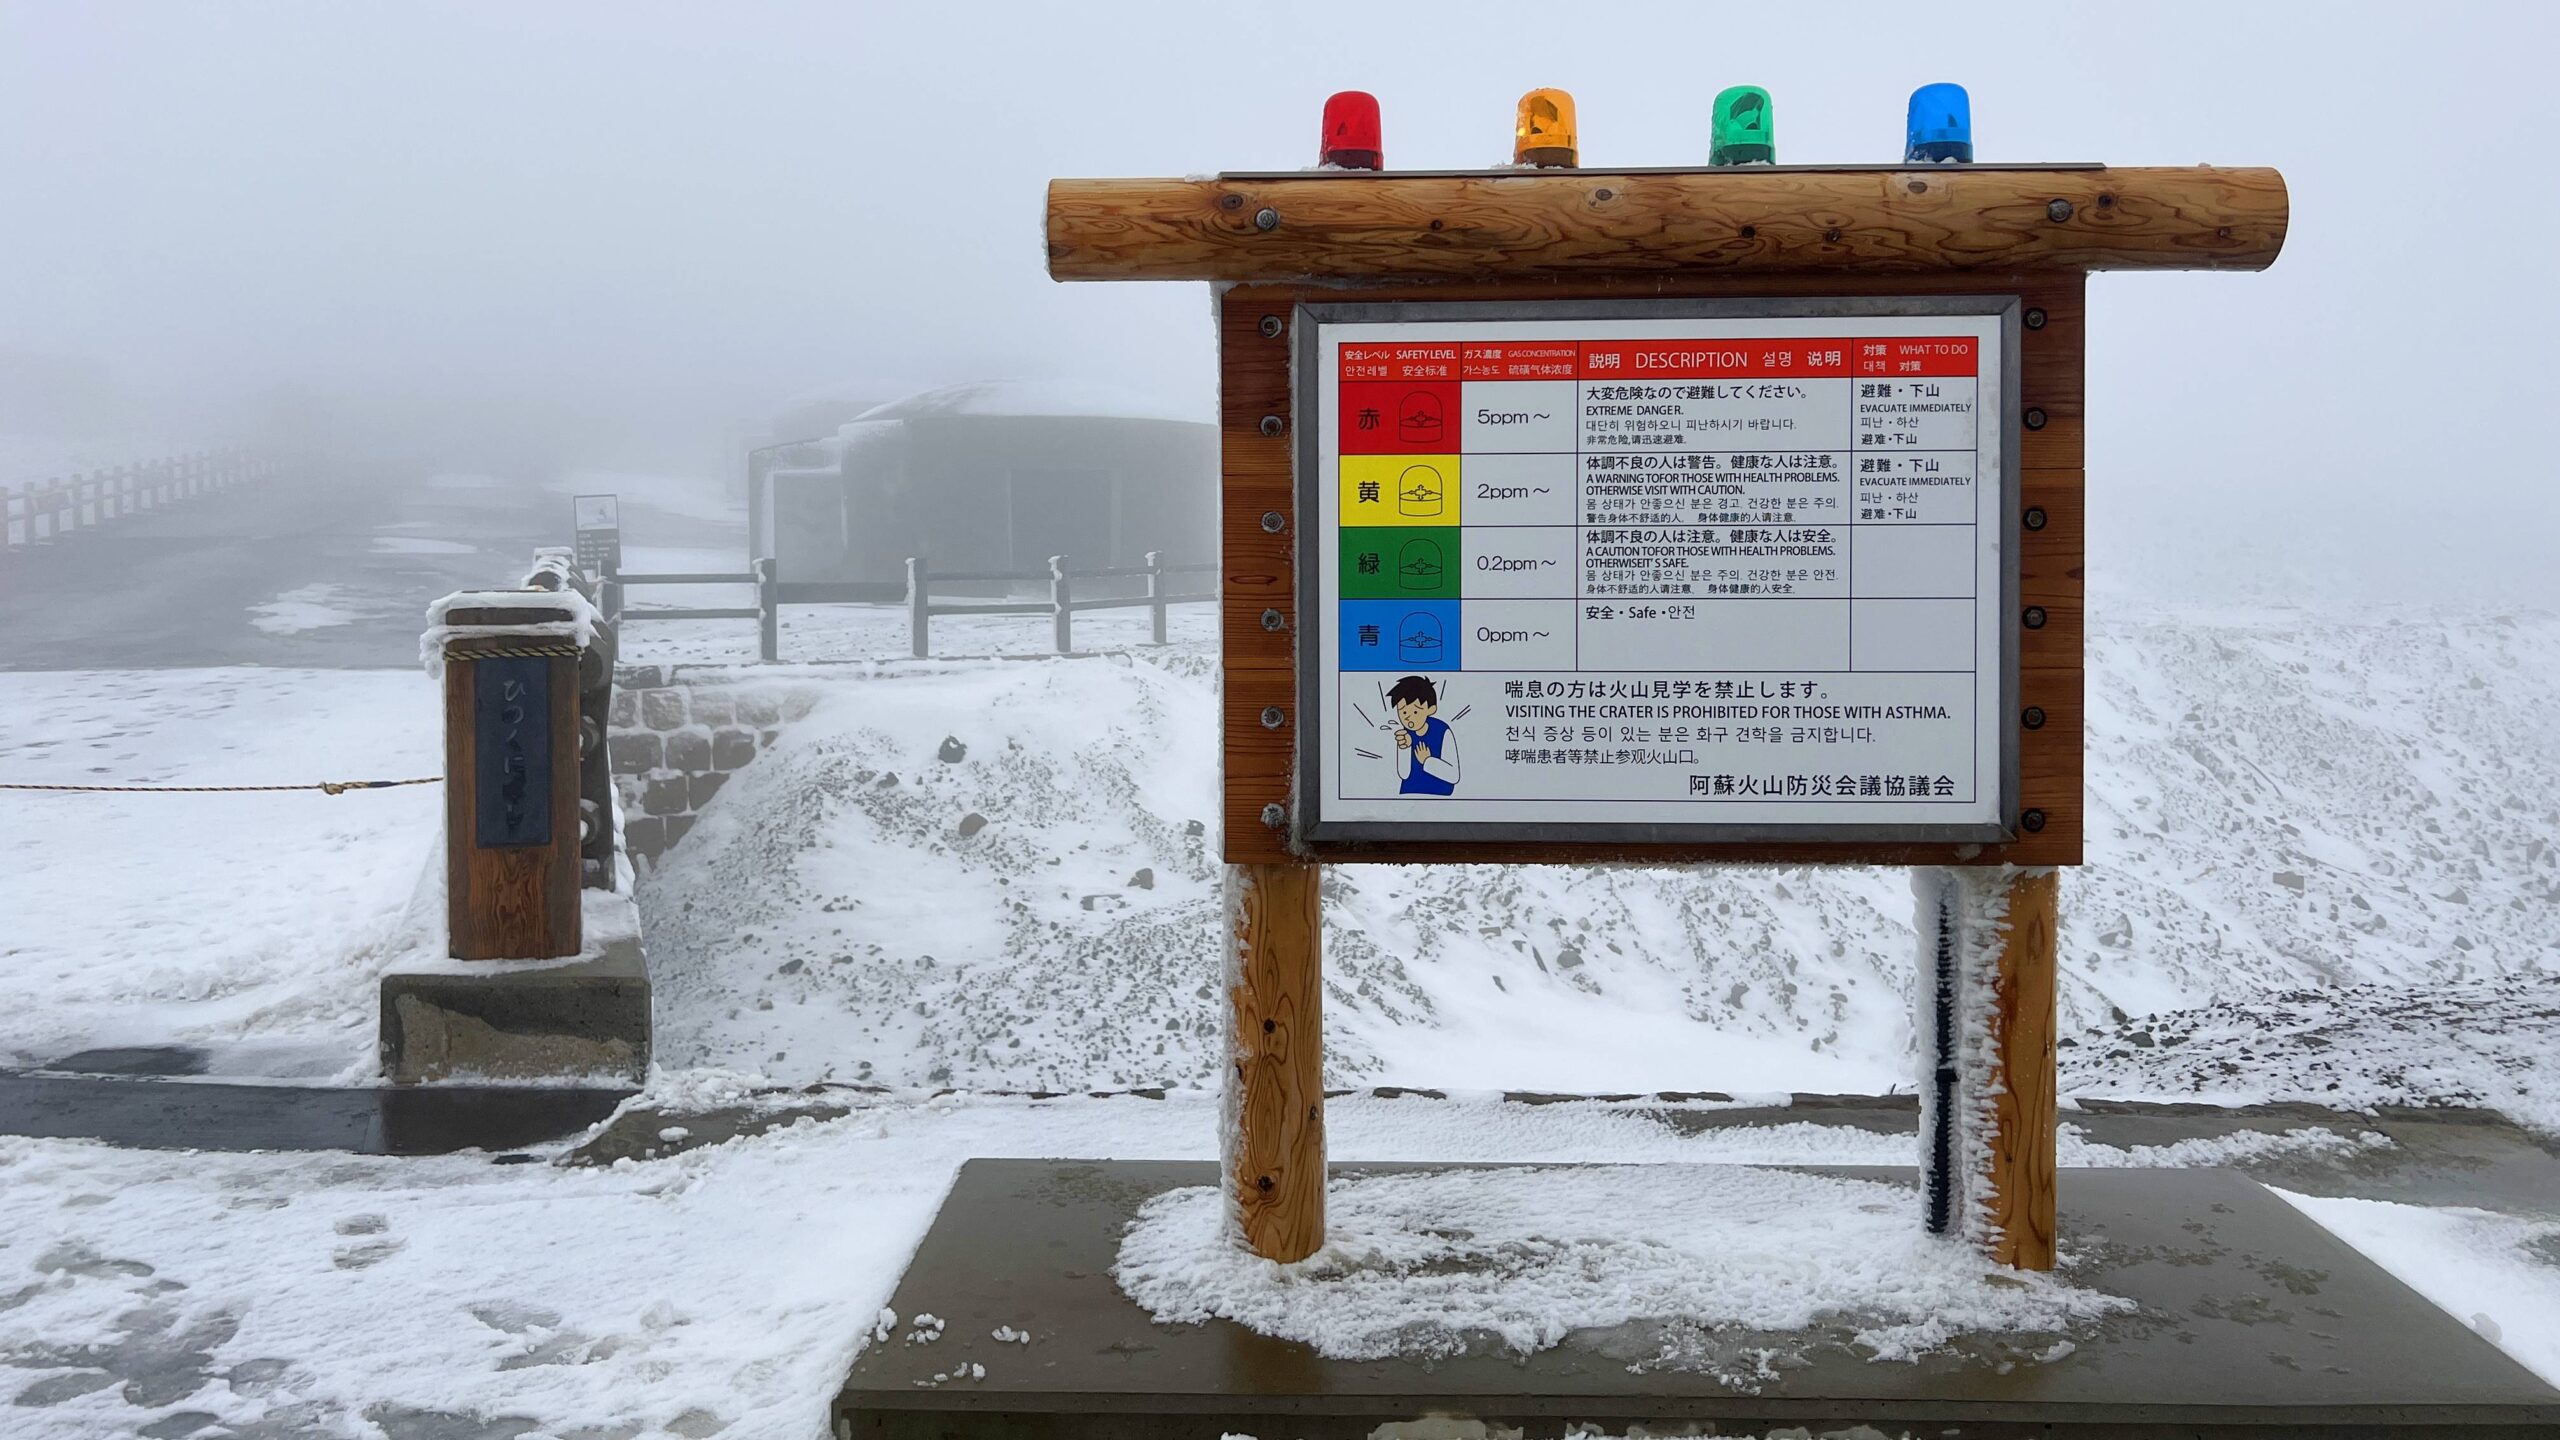 當冰雪與火山相遇，既像地獄又如天堂！九州熊本縣的冬日玩法－雪見阿蘇火山。 @。CJ夫人。